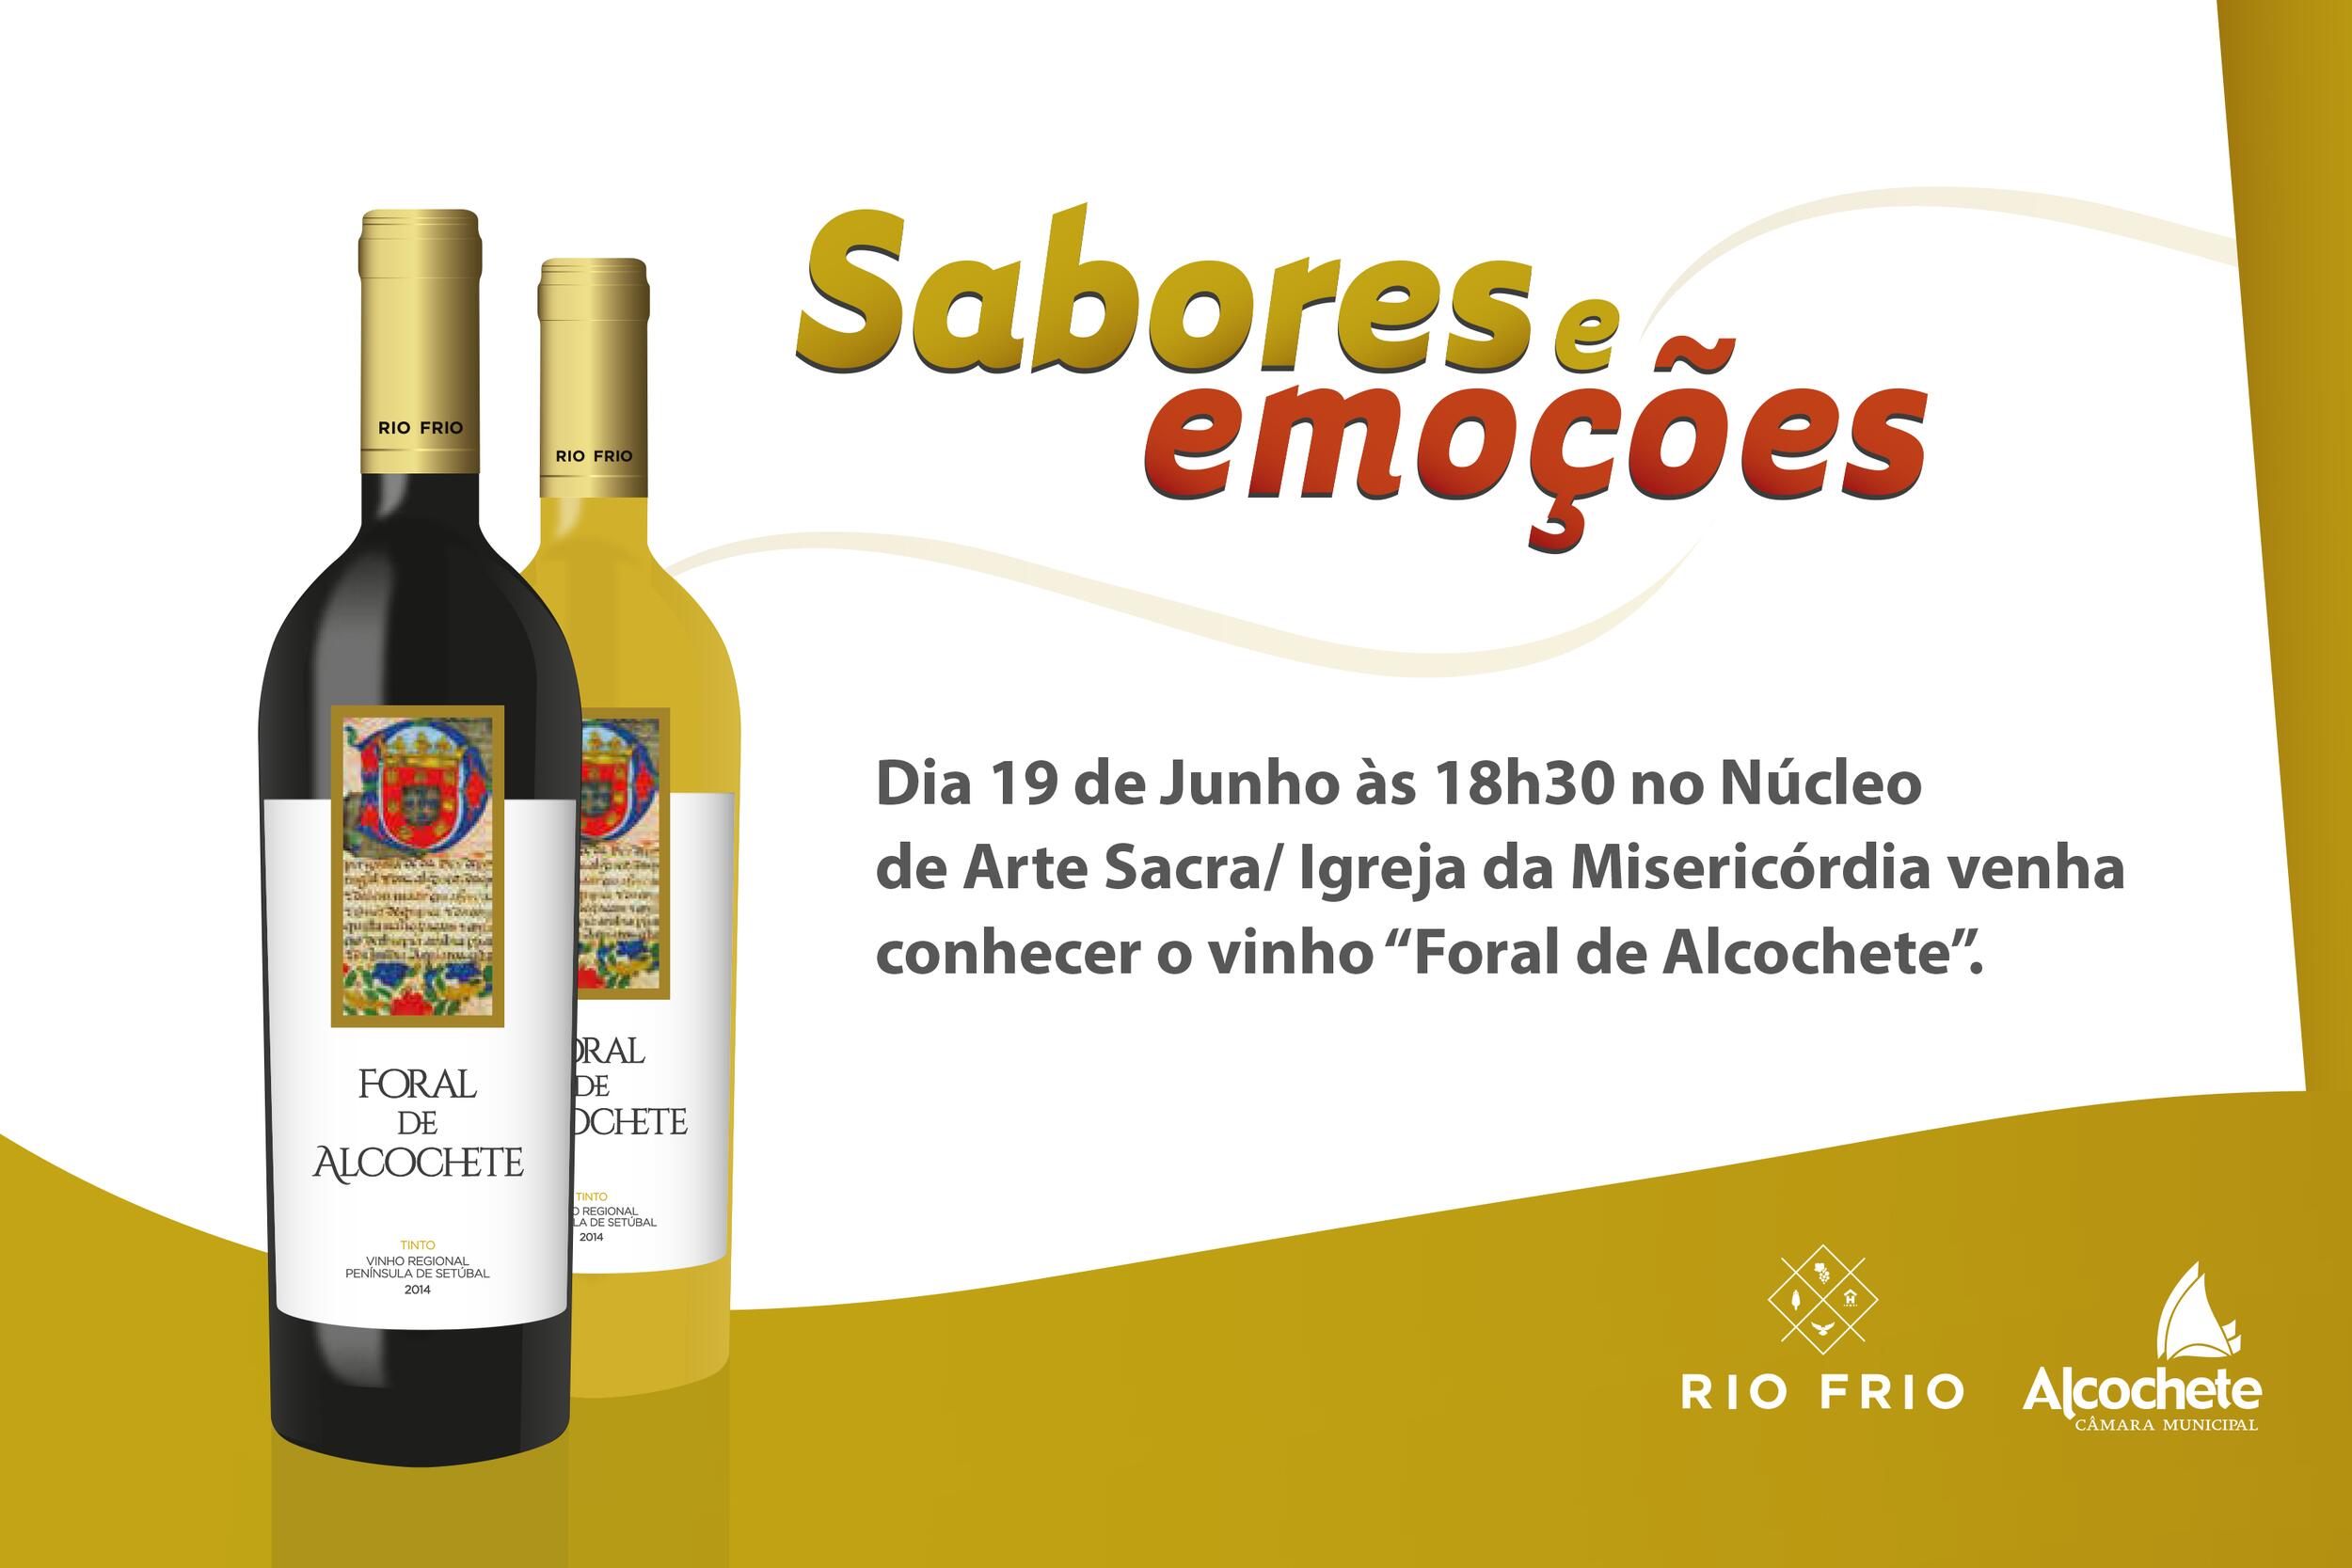 Vinhos “Foral de Alcochete” apresentados ao público a 19 de Junho